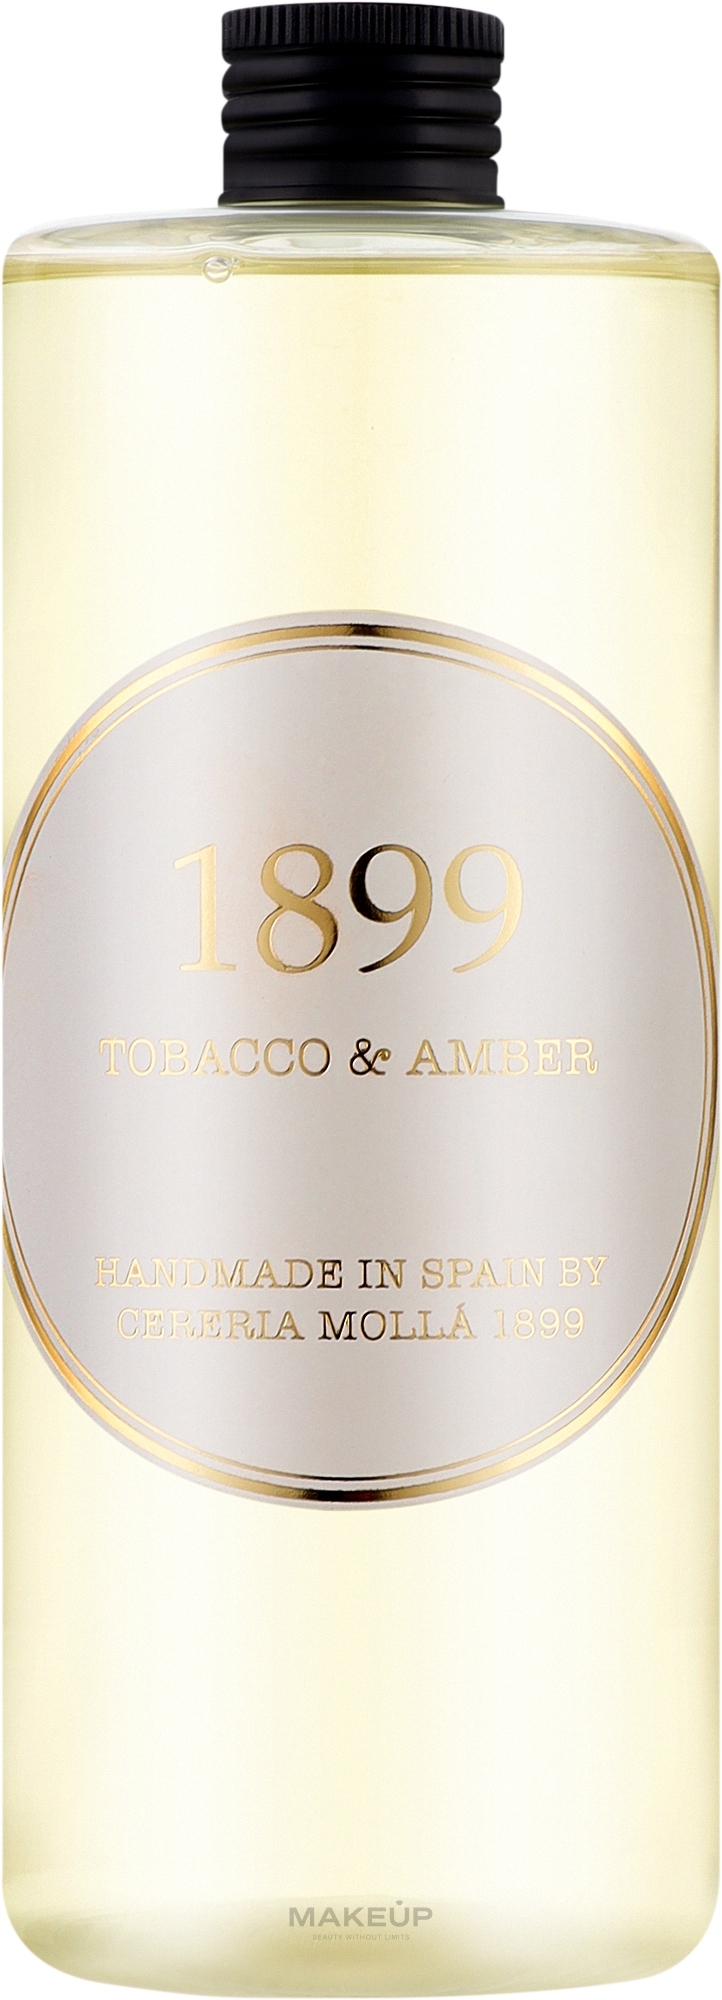 Наповнювач для аромадифузора - Cereria Molla Tobacco & Amber — фото 500ml